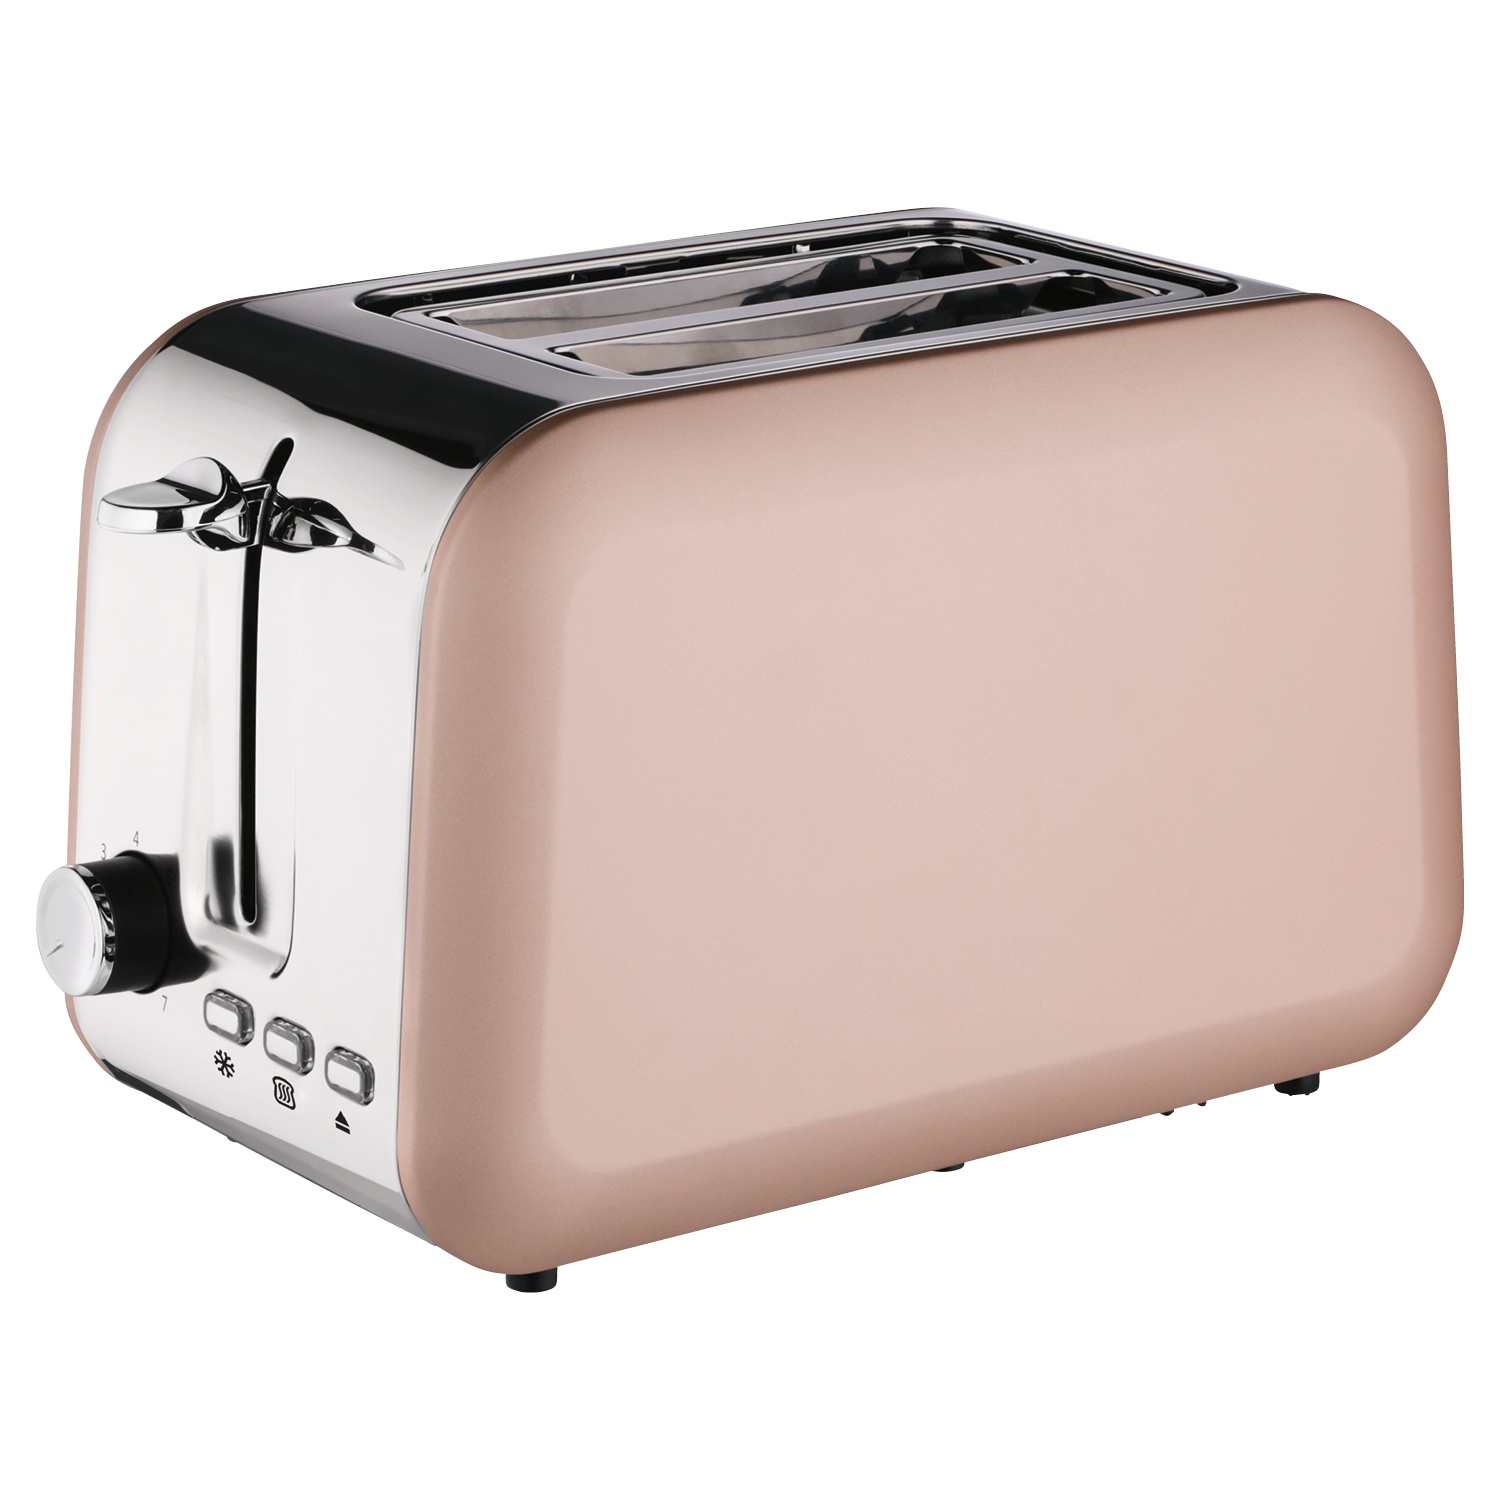 Aldi toaster - Die qualitativsten Aldi toaster analysiert!